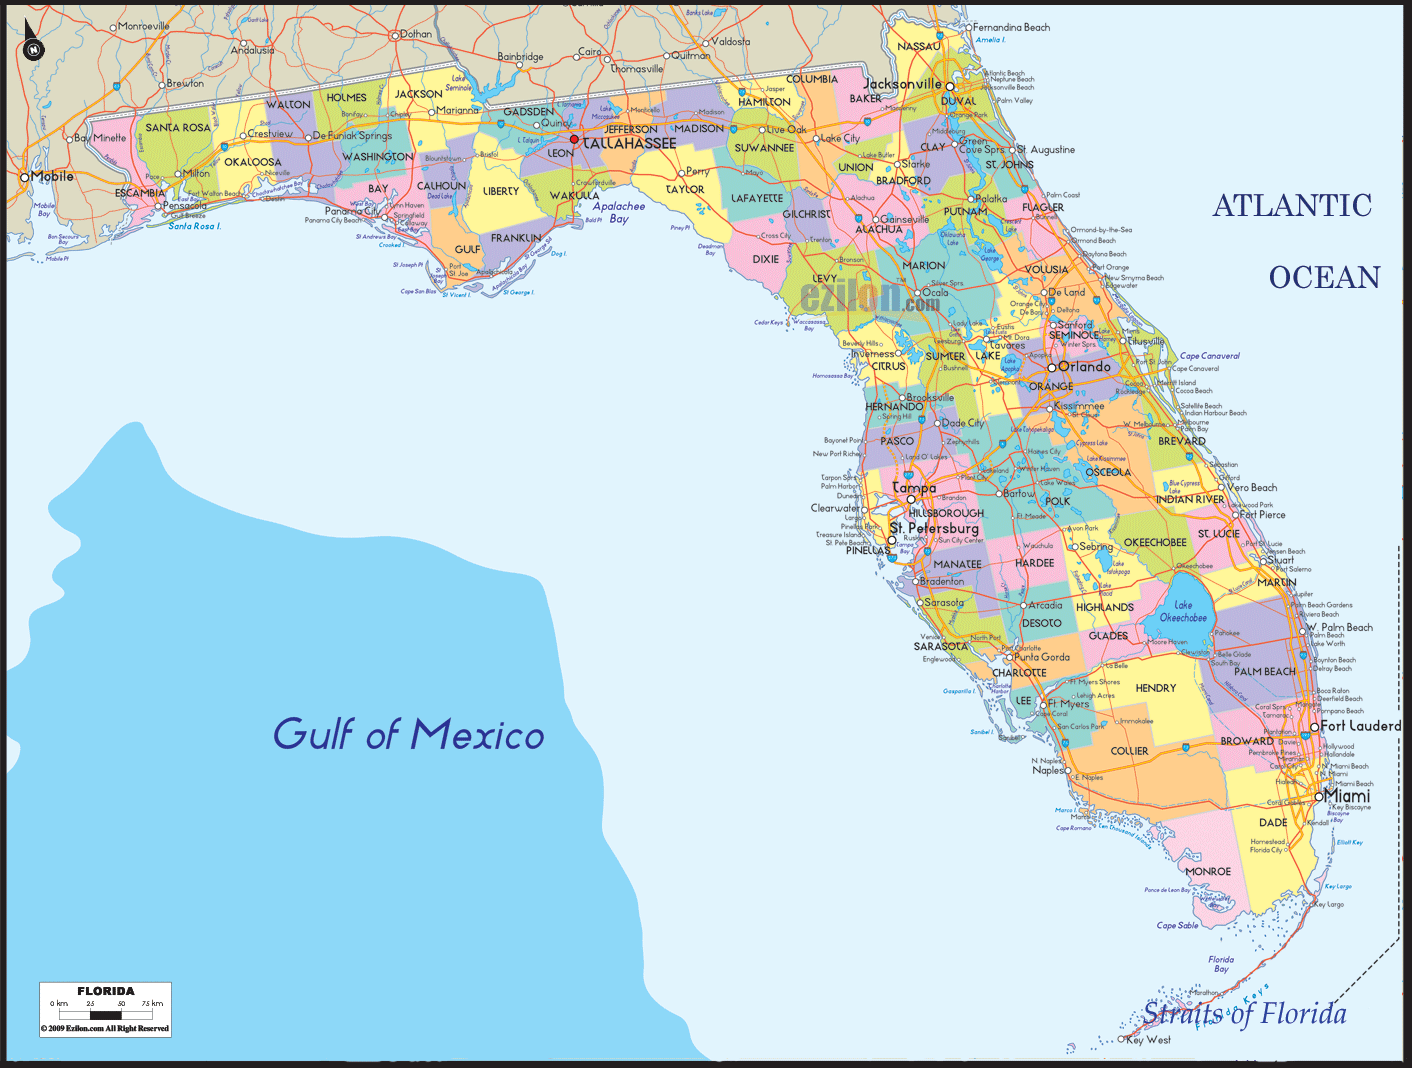 political-map-of-florida-ezilon-maps